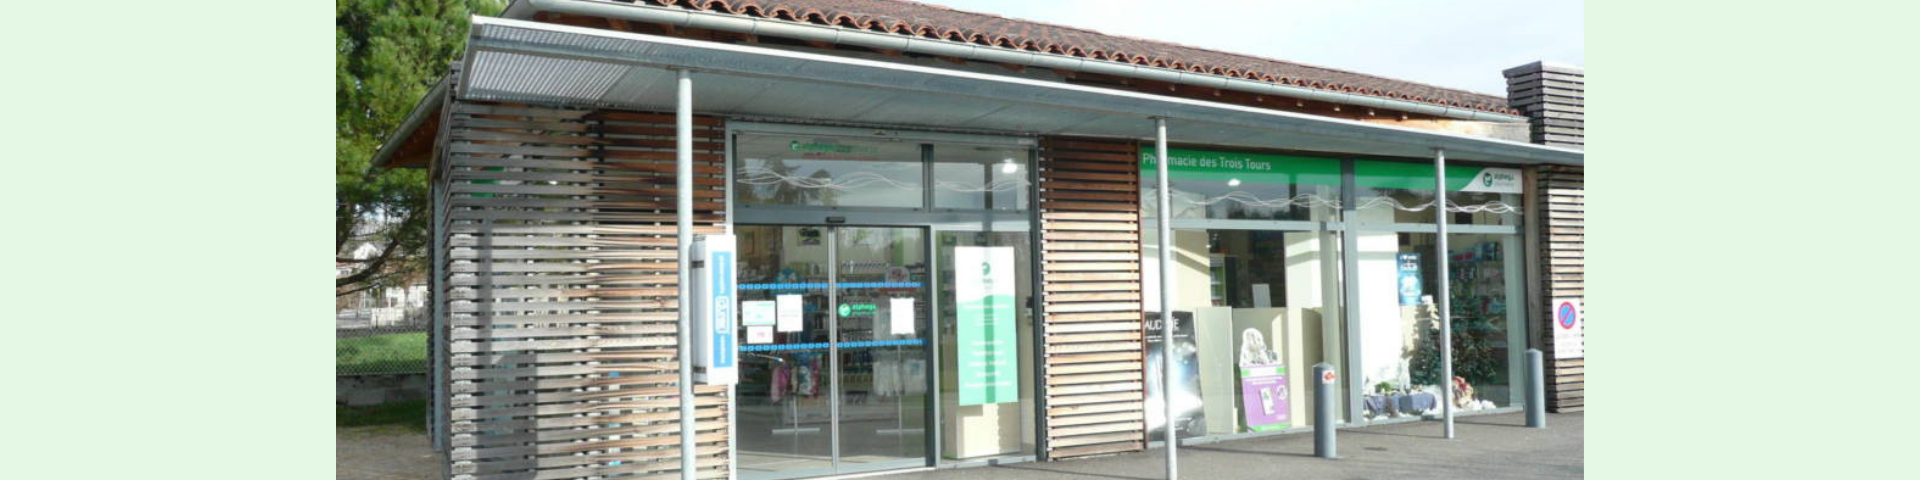 Boutique Pharmacie des Trois Tours - J'achte en Comminges